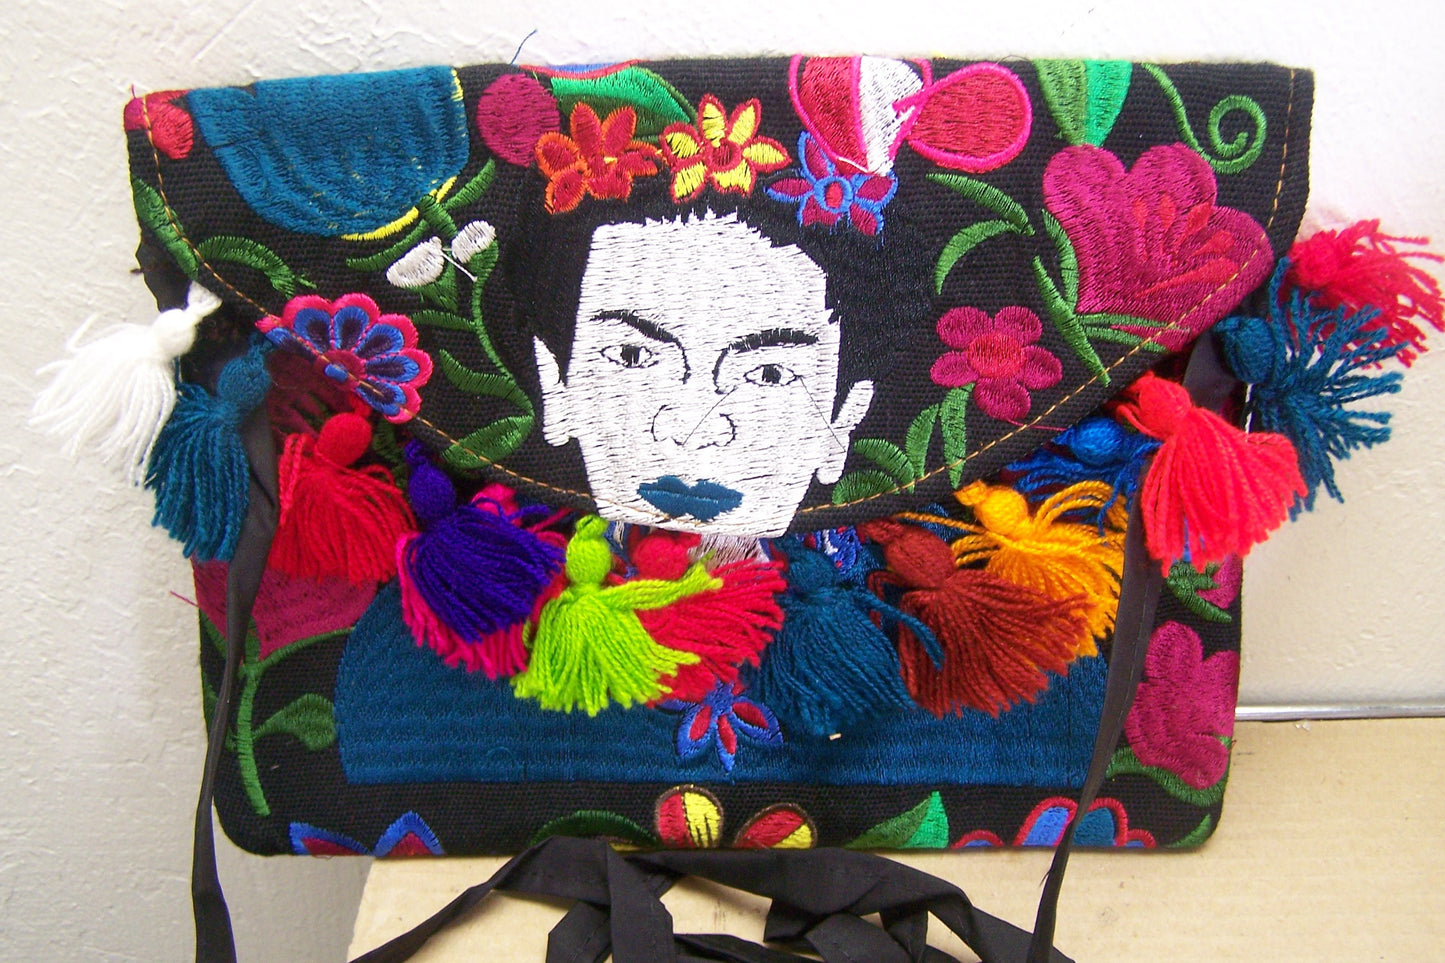 FRIDA! Beautifully Stitched Colorful Frida Kahlo Purse with Tassles #2 - Guatemala